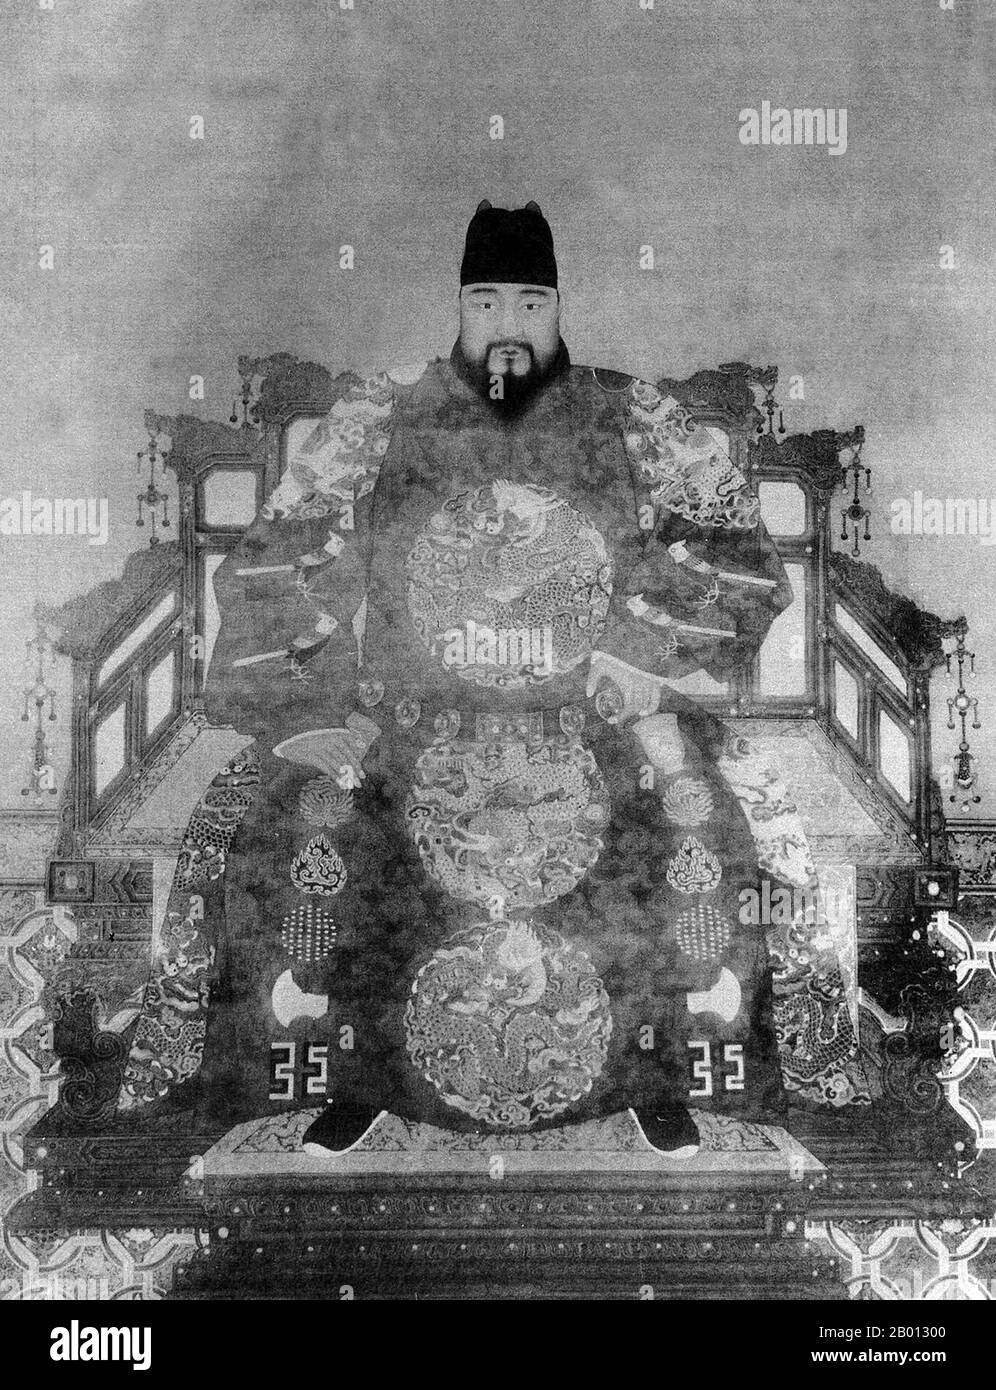 China: Kaiser Zhengtong/Tianshun (29. November 1427 - 23. Februar 1464), 6. Und 8. Herrscher der Ming-Dynastie (r. 1435-1449; 1457-1464). Hängende Schriftrolle, 15.-17. Jahrhundert. Zhu Qizhen (1427-1464), Tempelname Yingzong, war ein Kaiser der Ming-Dynastie, der als Zhengtong-Kaiser (r. 1435-1449) und als der Tianshun Kaiser (r. 1457-1464). Sein Name in der ersten Ära bedeutet „richtige Regierungsführung“ und der zweite bedeutet „dem Himmel gehorsam“. Er führte 1449 einen katastrophalen Feldzug durch, bei dem eine halbe Million Ming-Soldaten getötet und von den Mongolen gefangen genommen wurden, wobei sein Bruder die Führung übernahm. Stockfoto